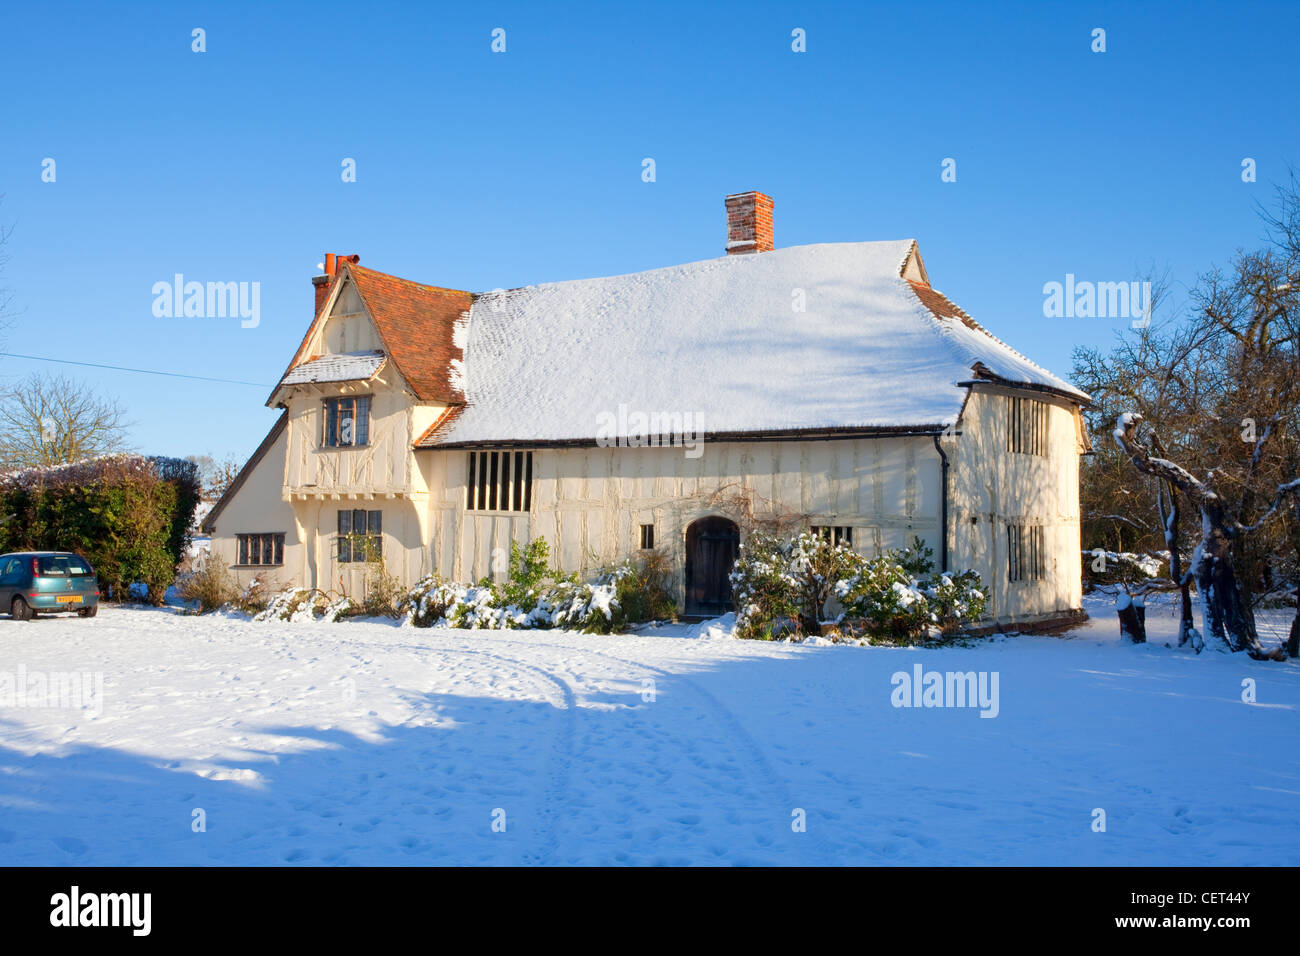 Schnee auf und um Valley Farm, einem mittelalterlichen Hall Haus gebaut im 15. Jahrhundert. Es ist das älteste Gebäude in Flatford. Stockfoto